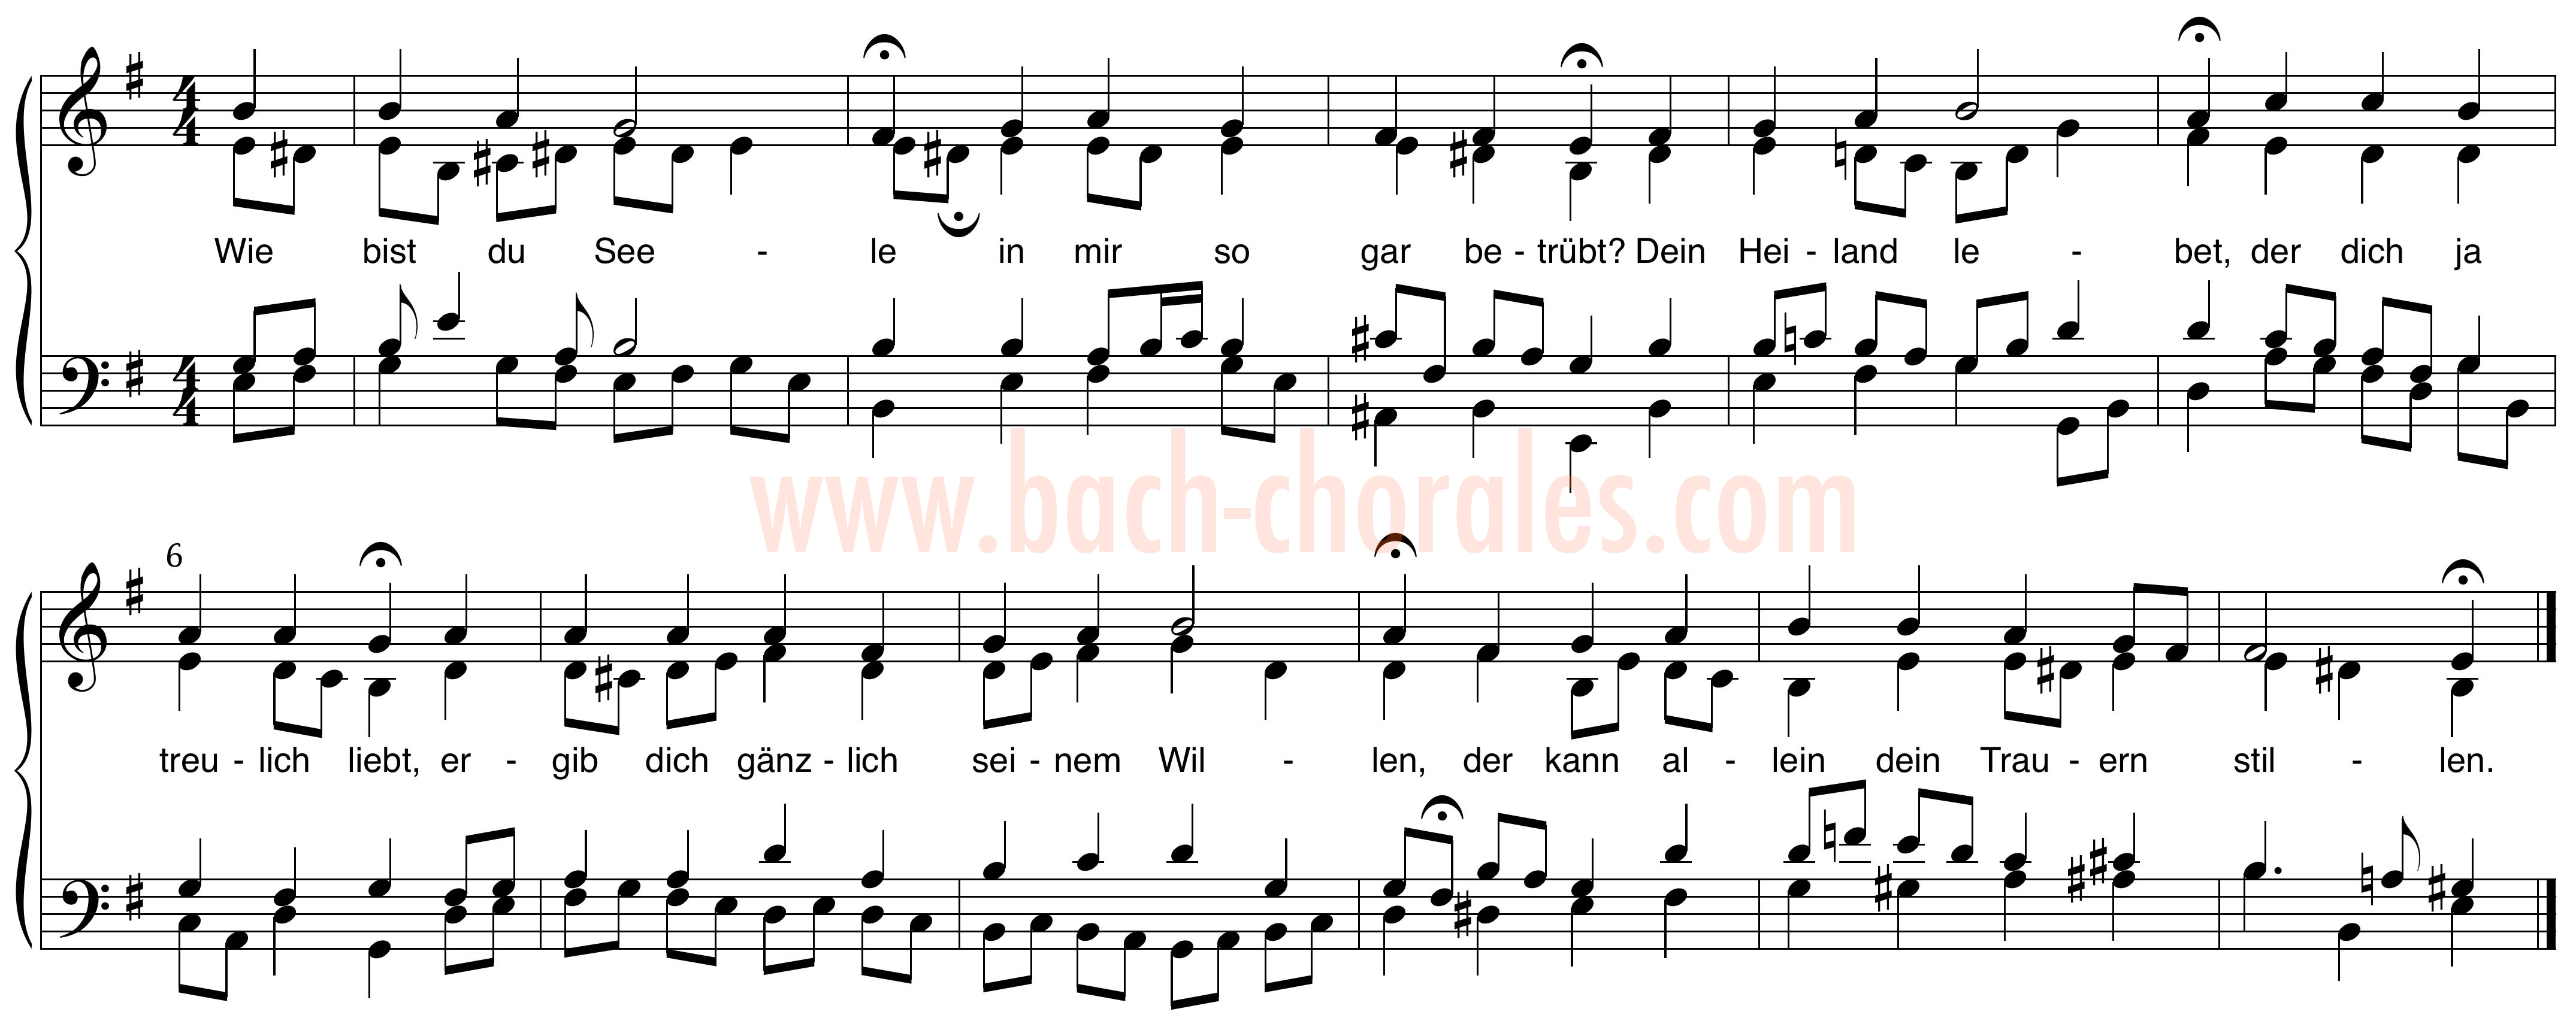 notenbeeld BWV 435 op https://www.bach-chorales.com/